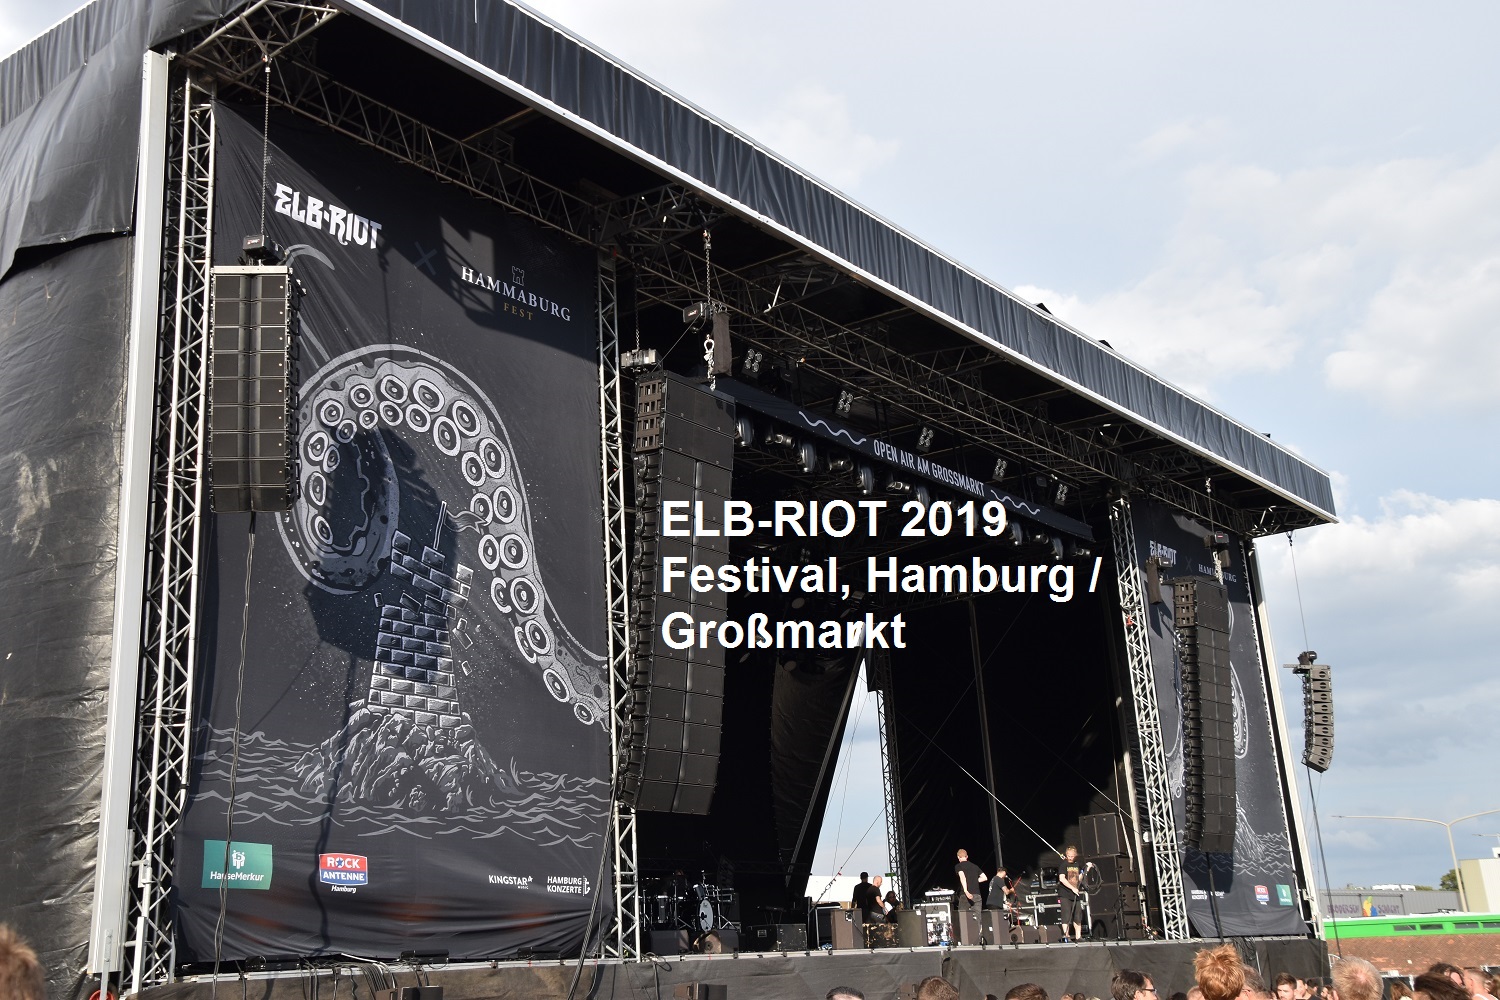 ELB-RIOT Festival, 17-08-2019 Hamburg / Großmarkt mit In Flames, Airbourne, Hatebreed, Of Mice And Men, Dragonforce, Zeal & Ardor, Jinjer, Shvpes)